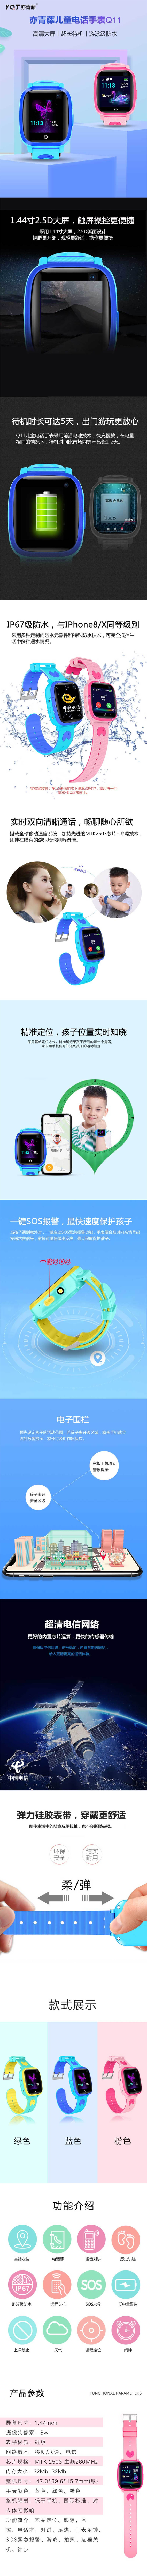 亦青藤Q11儿童手表（电信版） - 产品展示 - 亦青藤.jpg